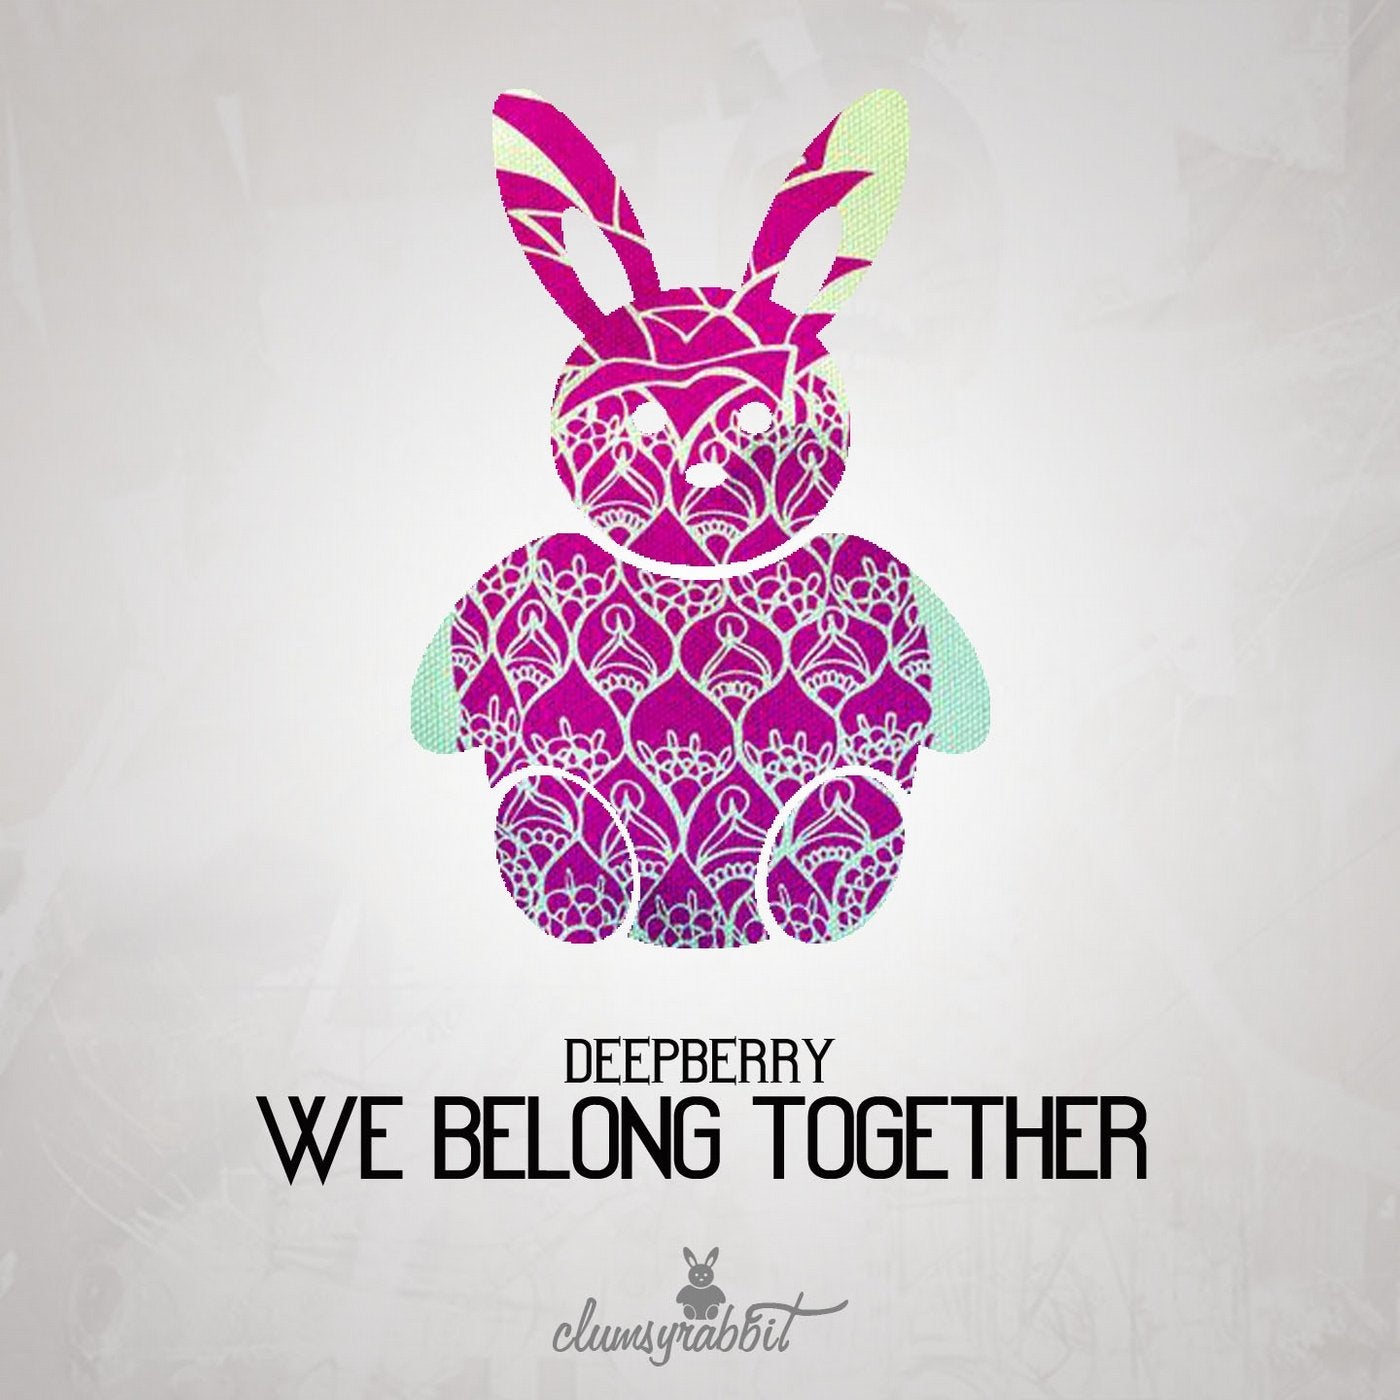 Belong together speed up. We belong together. We belong we belong together. Carey we belong together. Картинка we belong together.